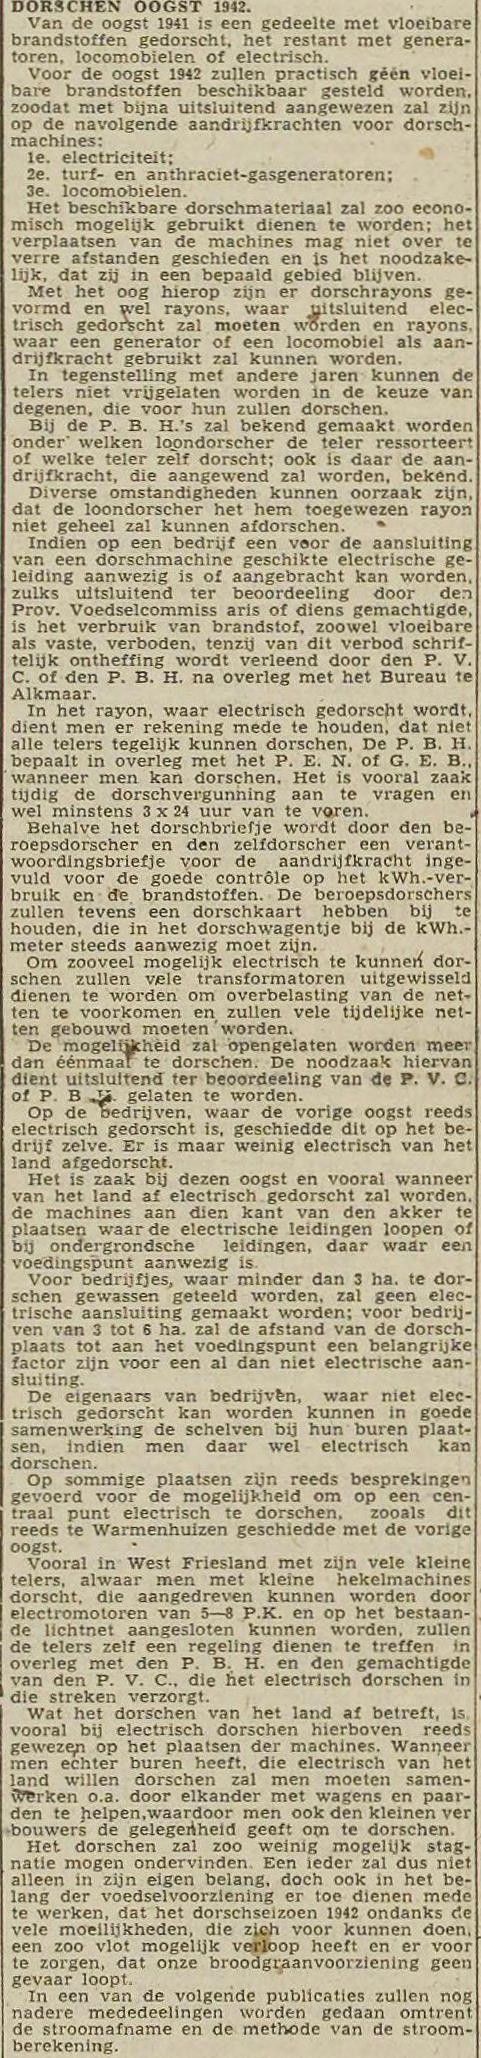 19420731 info Dorschkaart Haarlemsche Courant